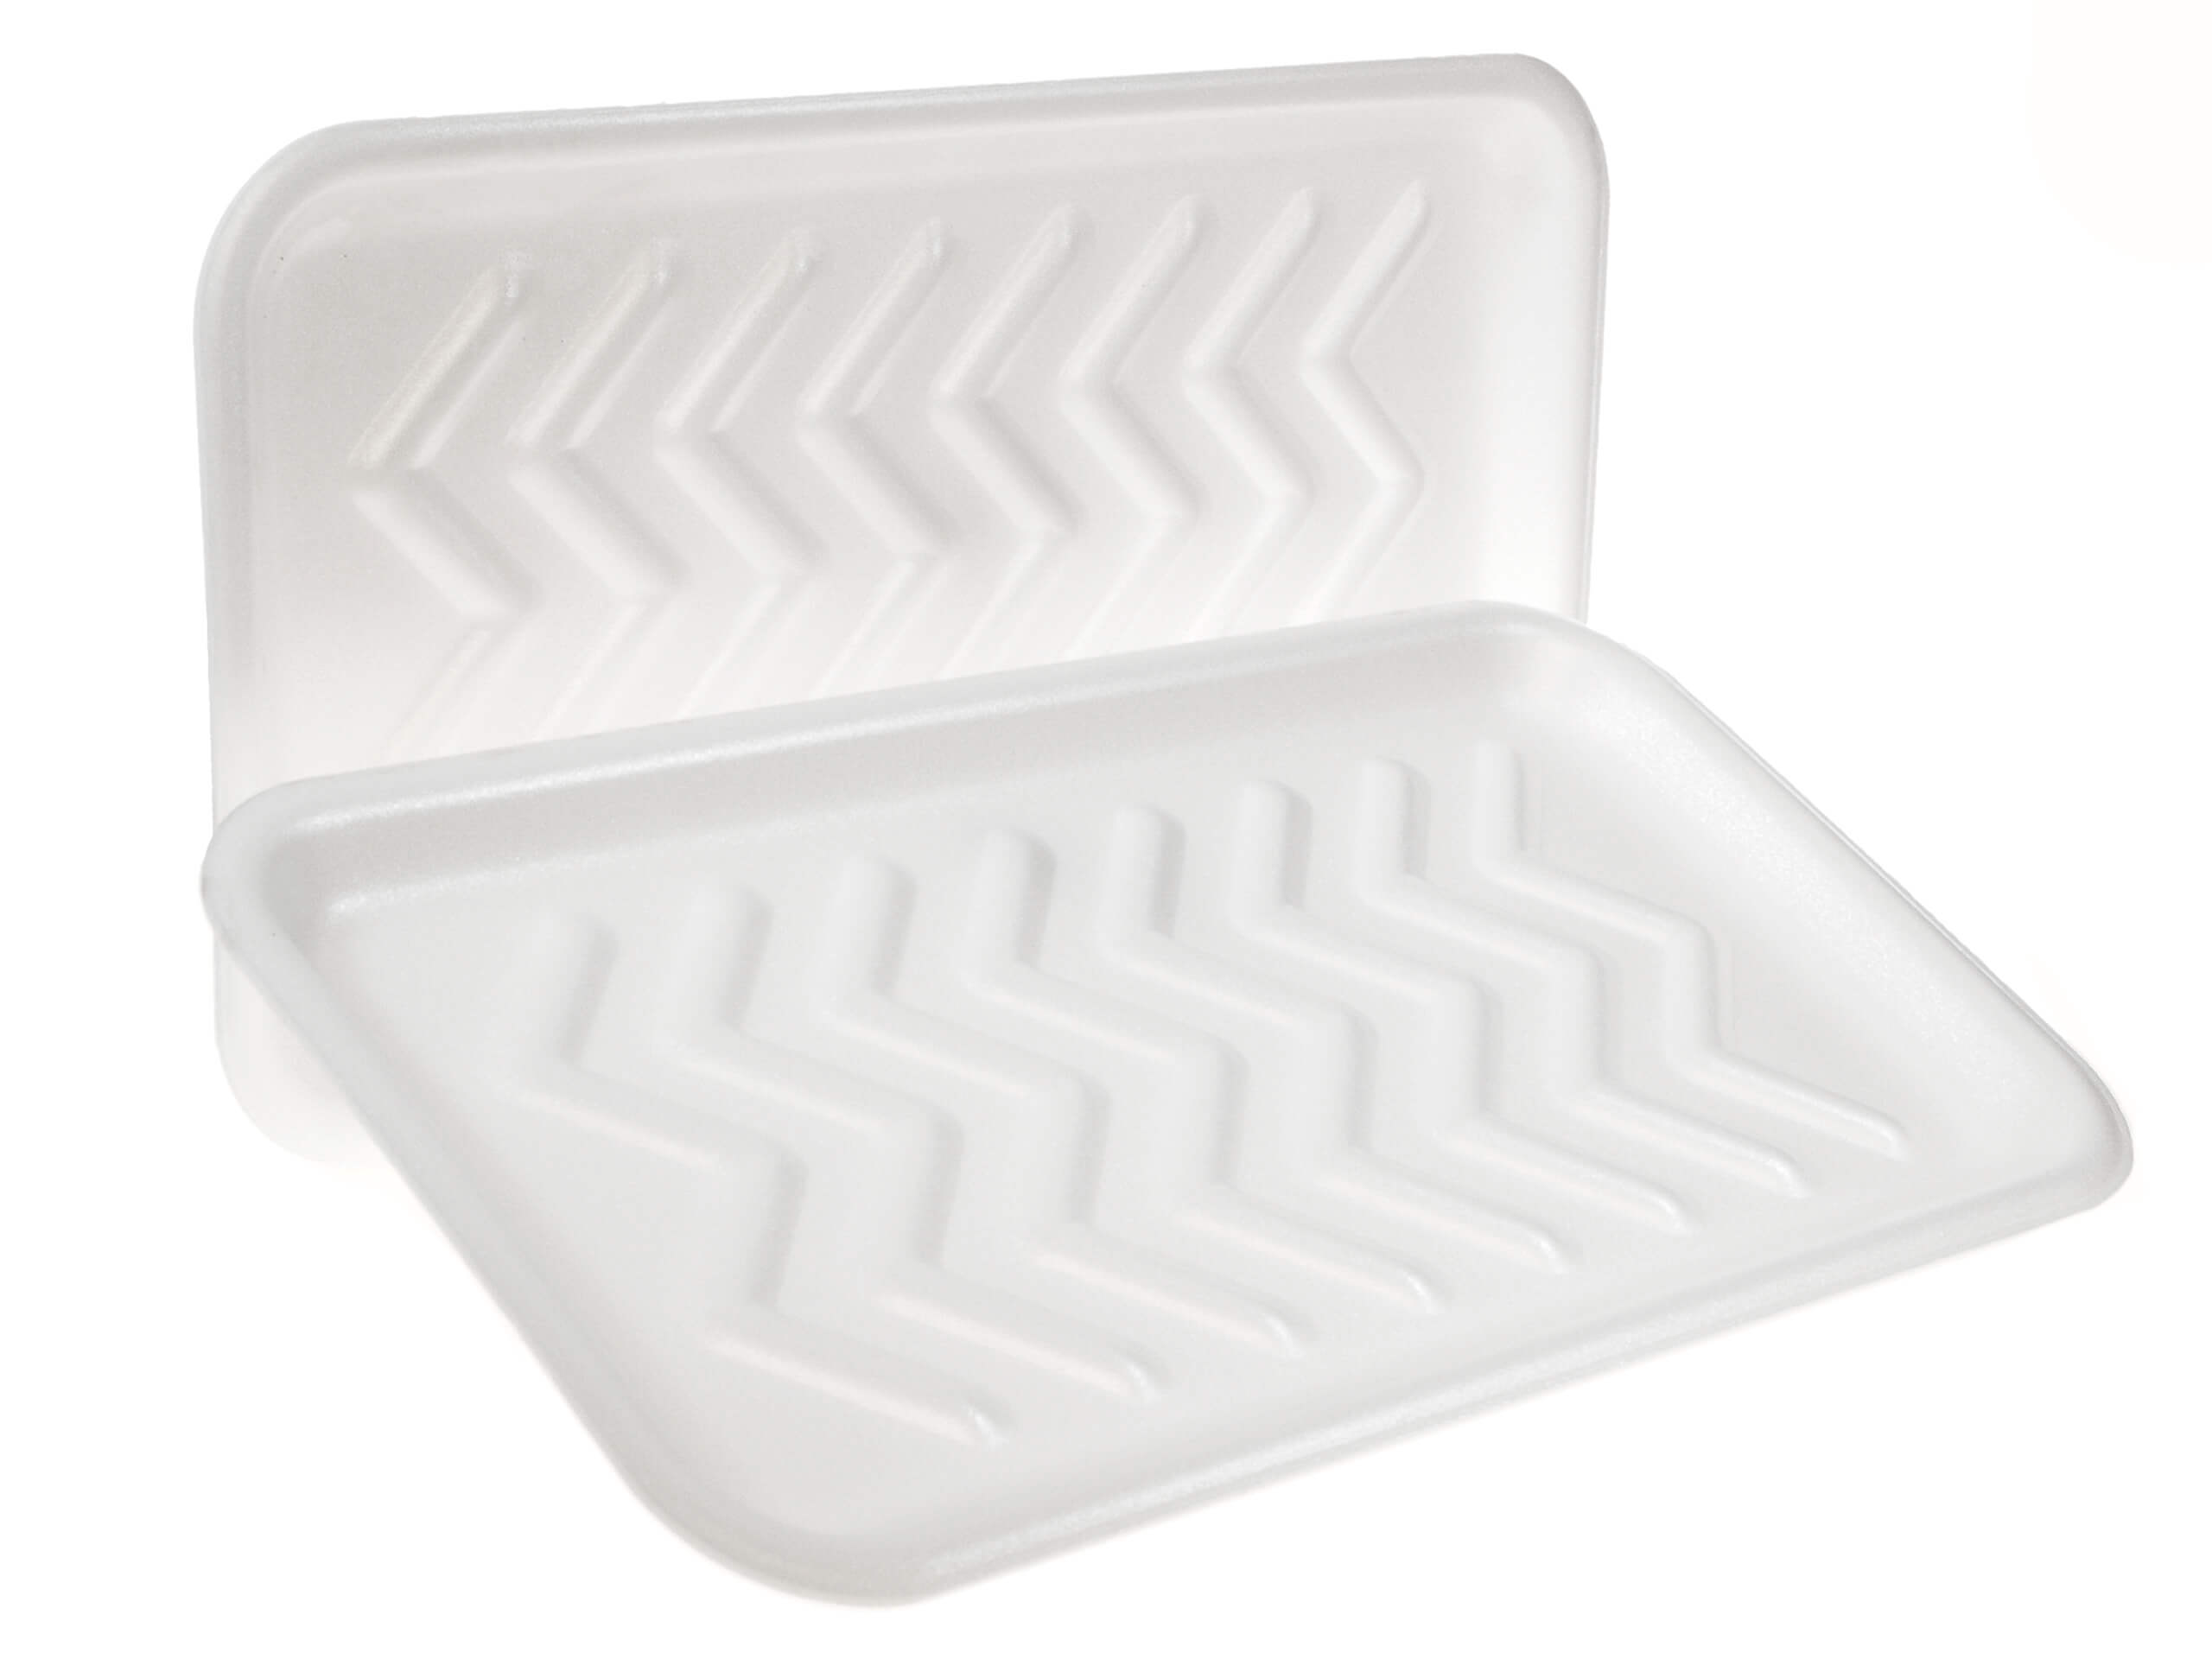 Meat Foam Trays  8P Foam Tray 10.875 x 8.625 x 0.81 in